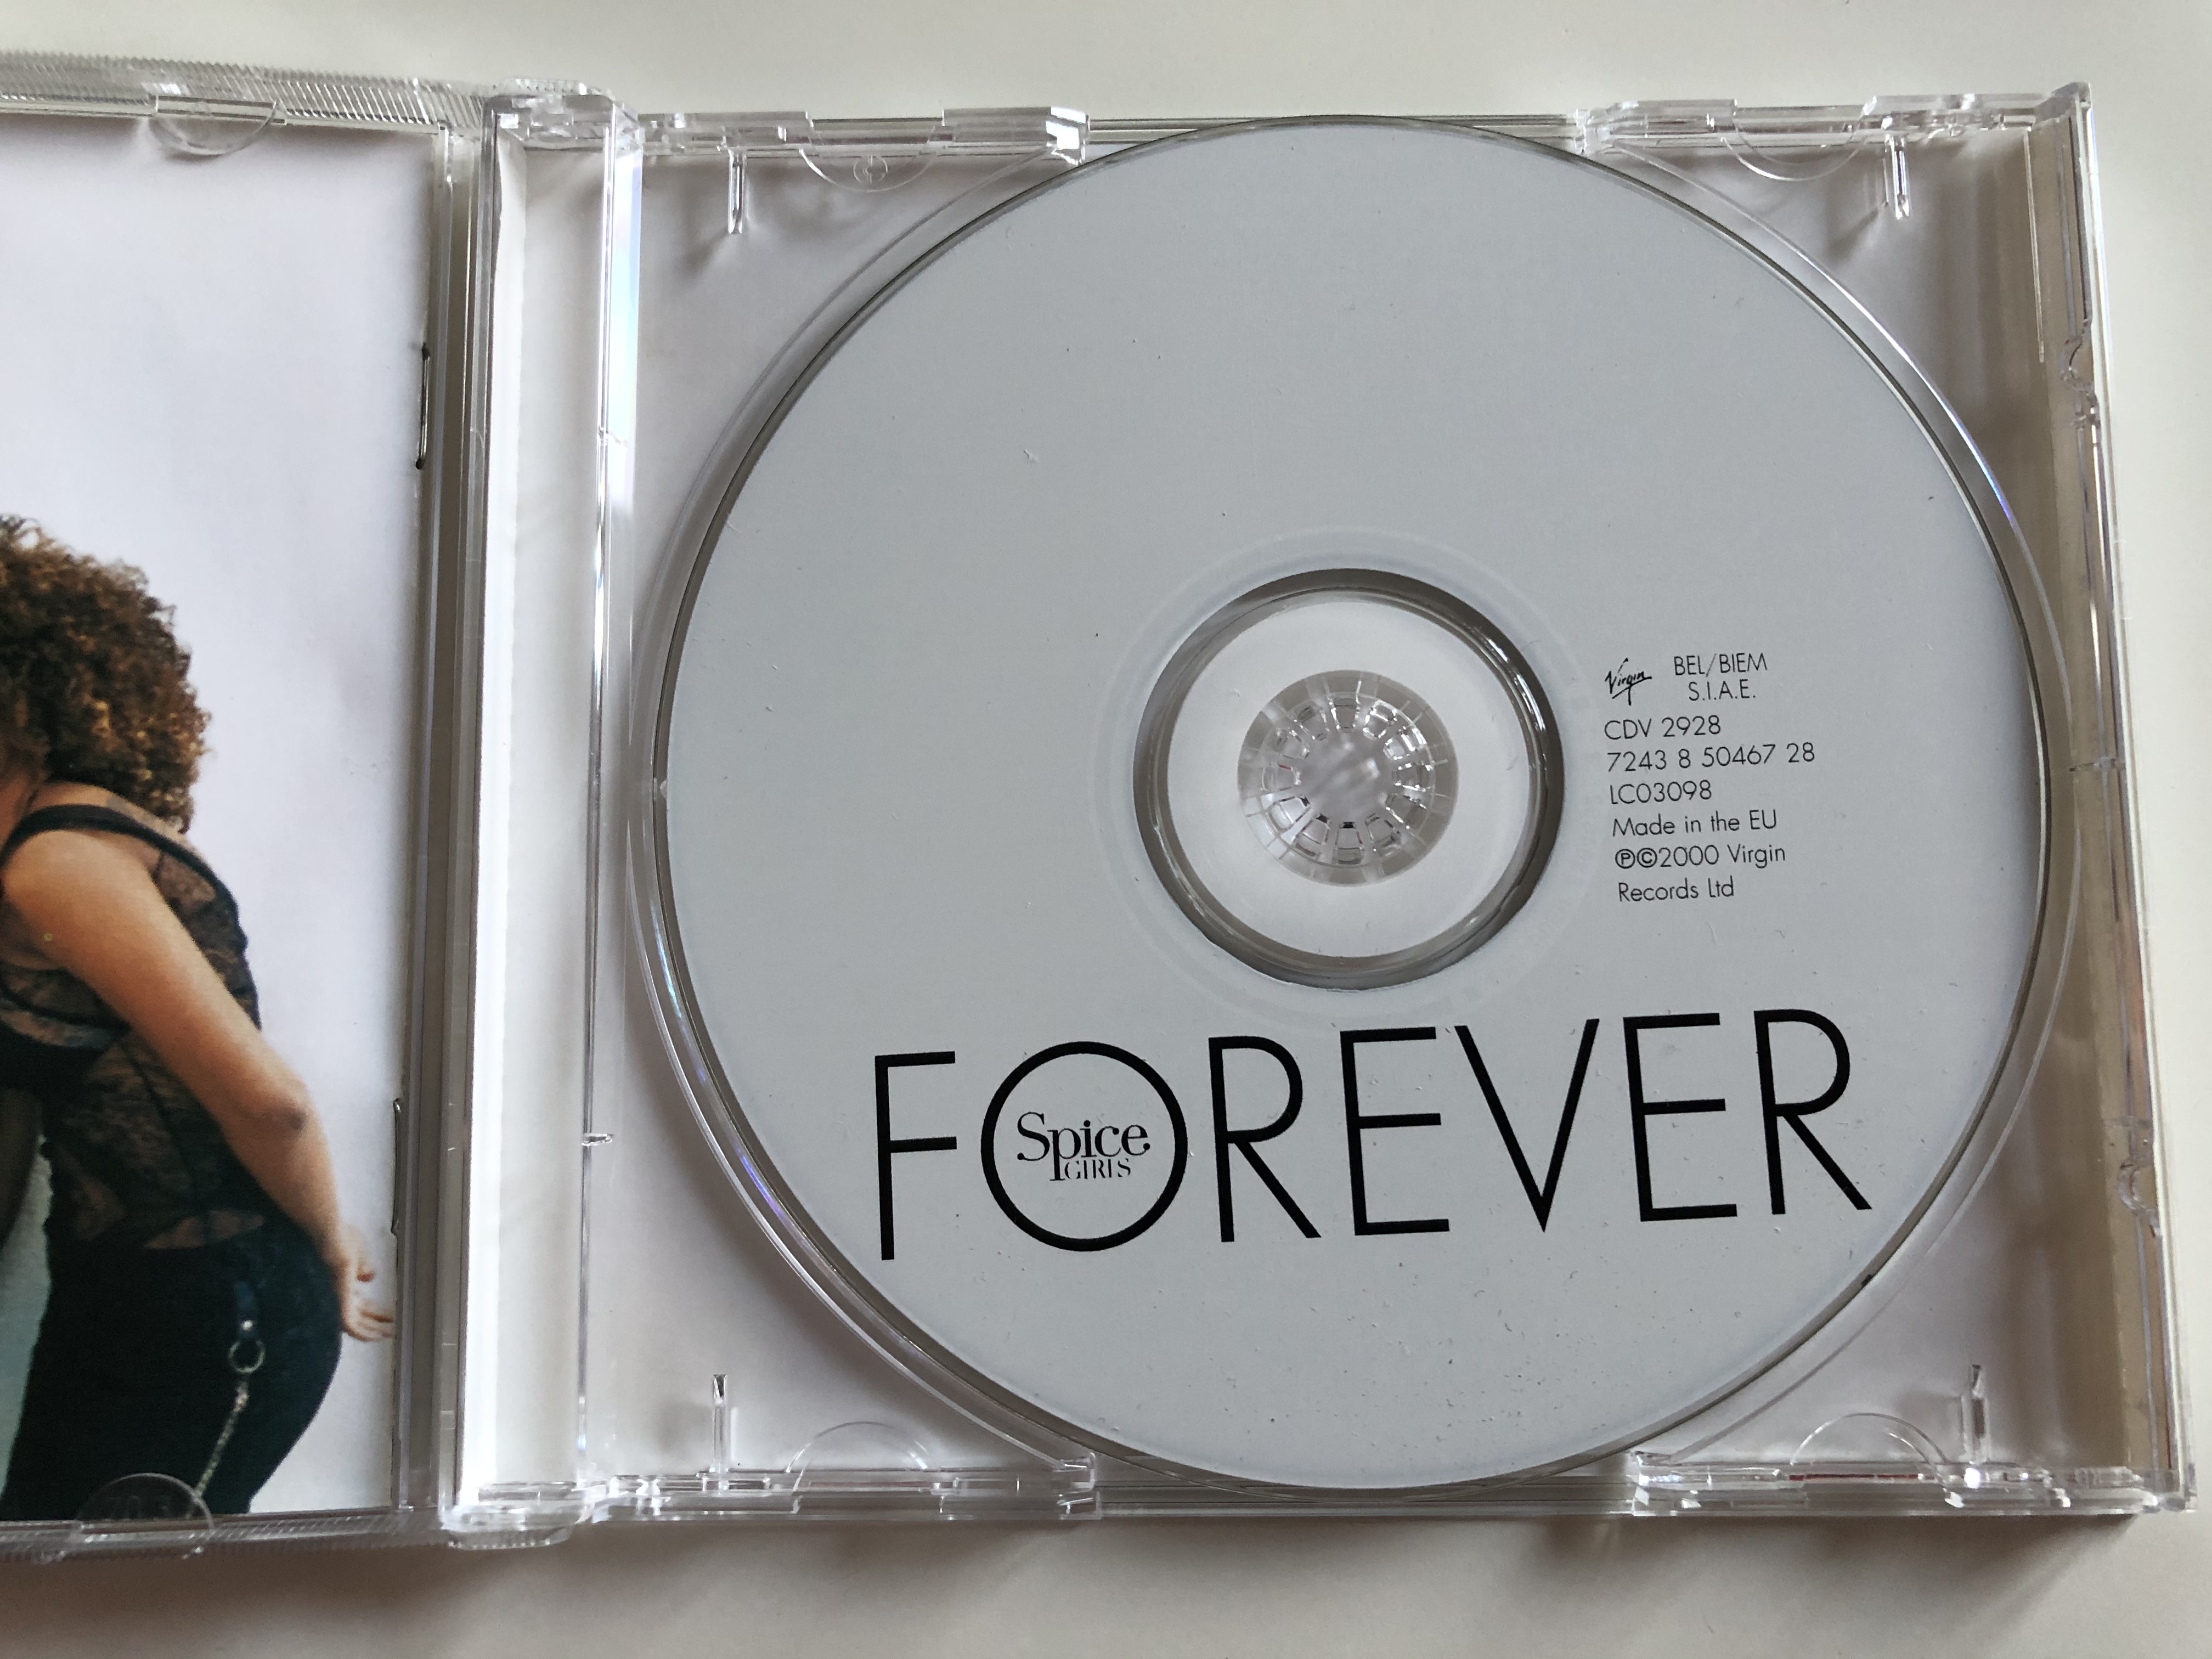 spice-girls-forever-virgin-audio-cd-2000-cdv-2928-2-.jpg